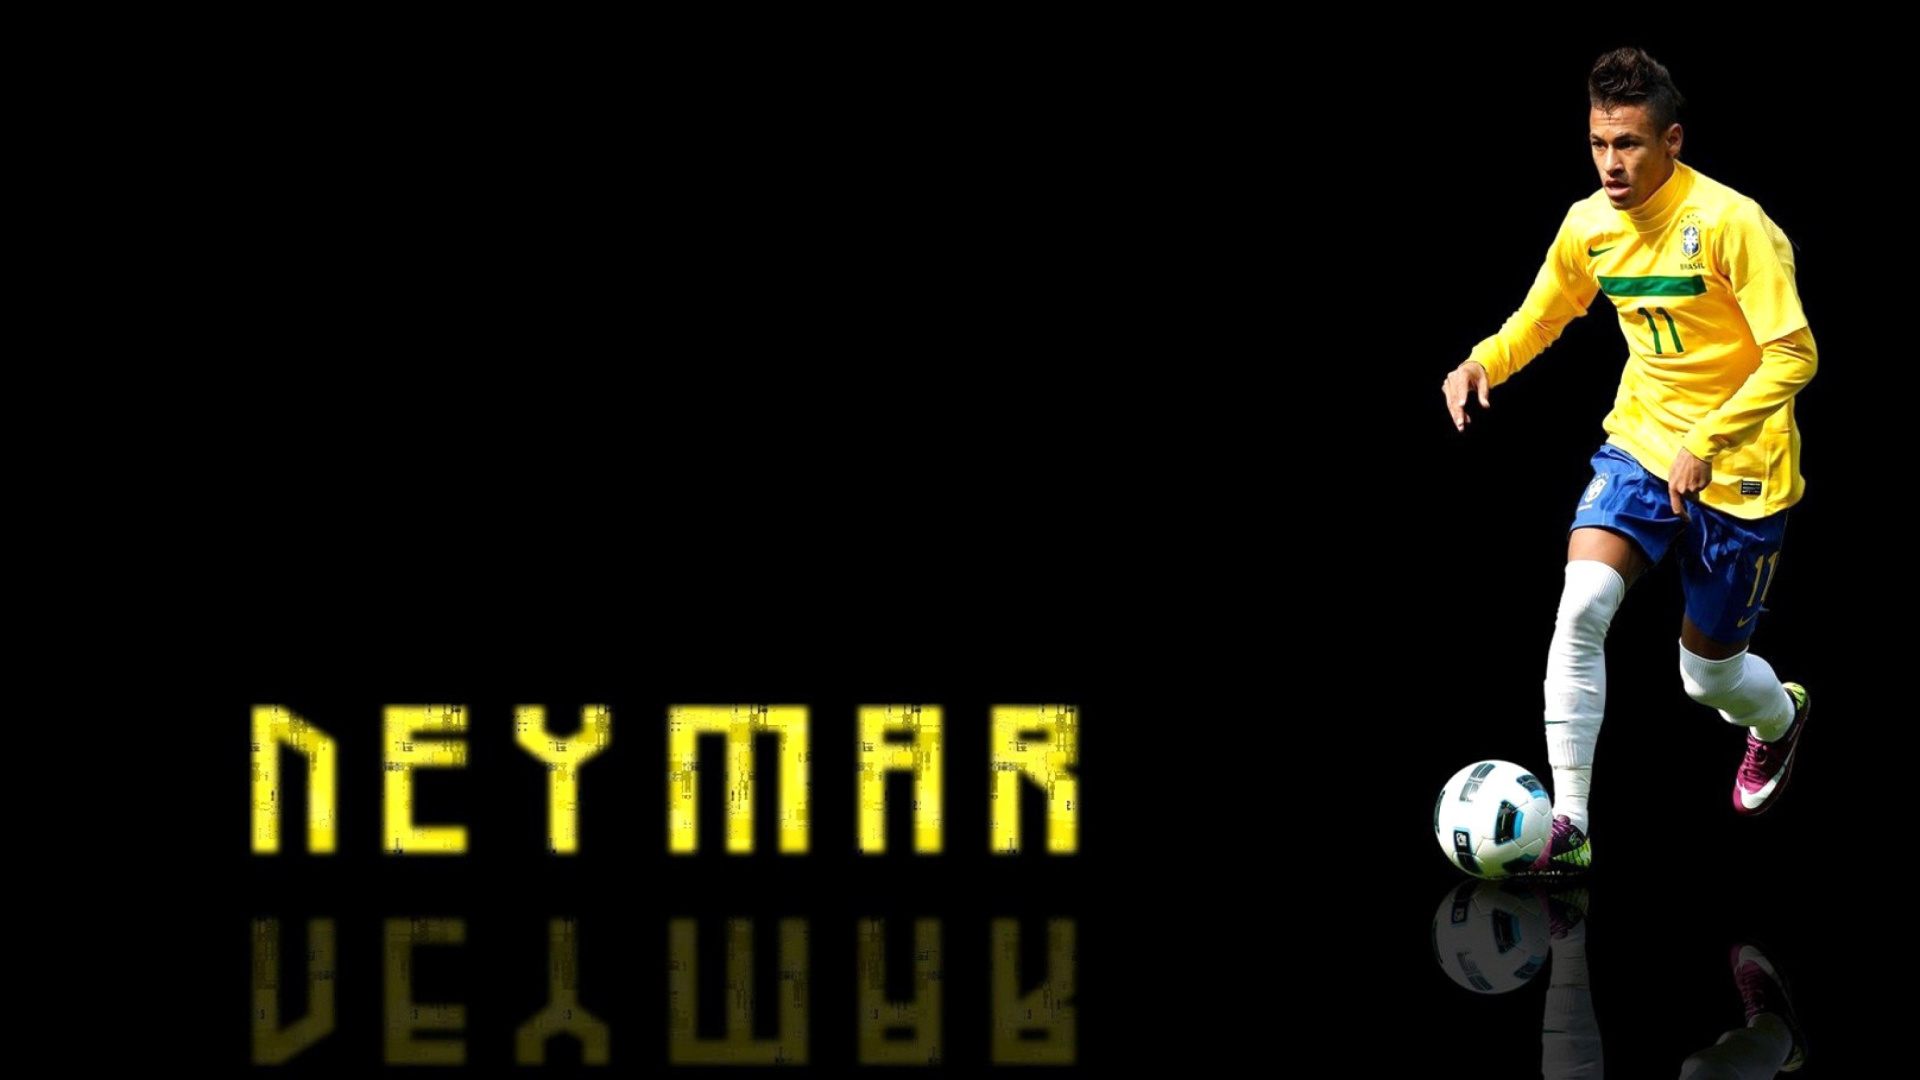 Neymar Brazilian Professional Footballer wallpaper 1920x1080